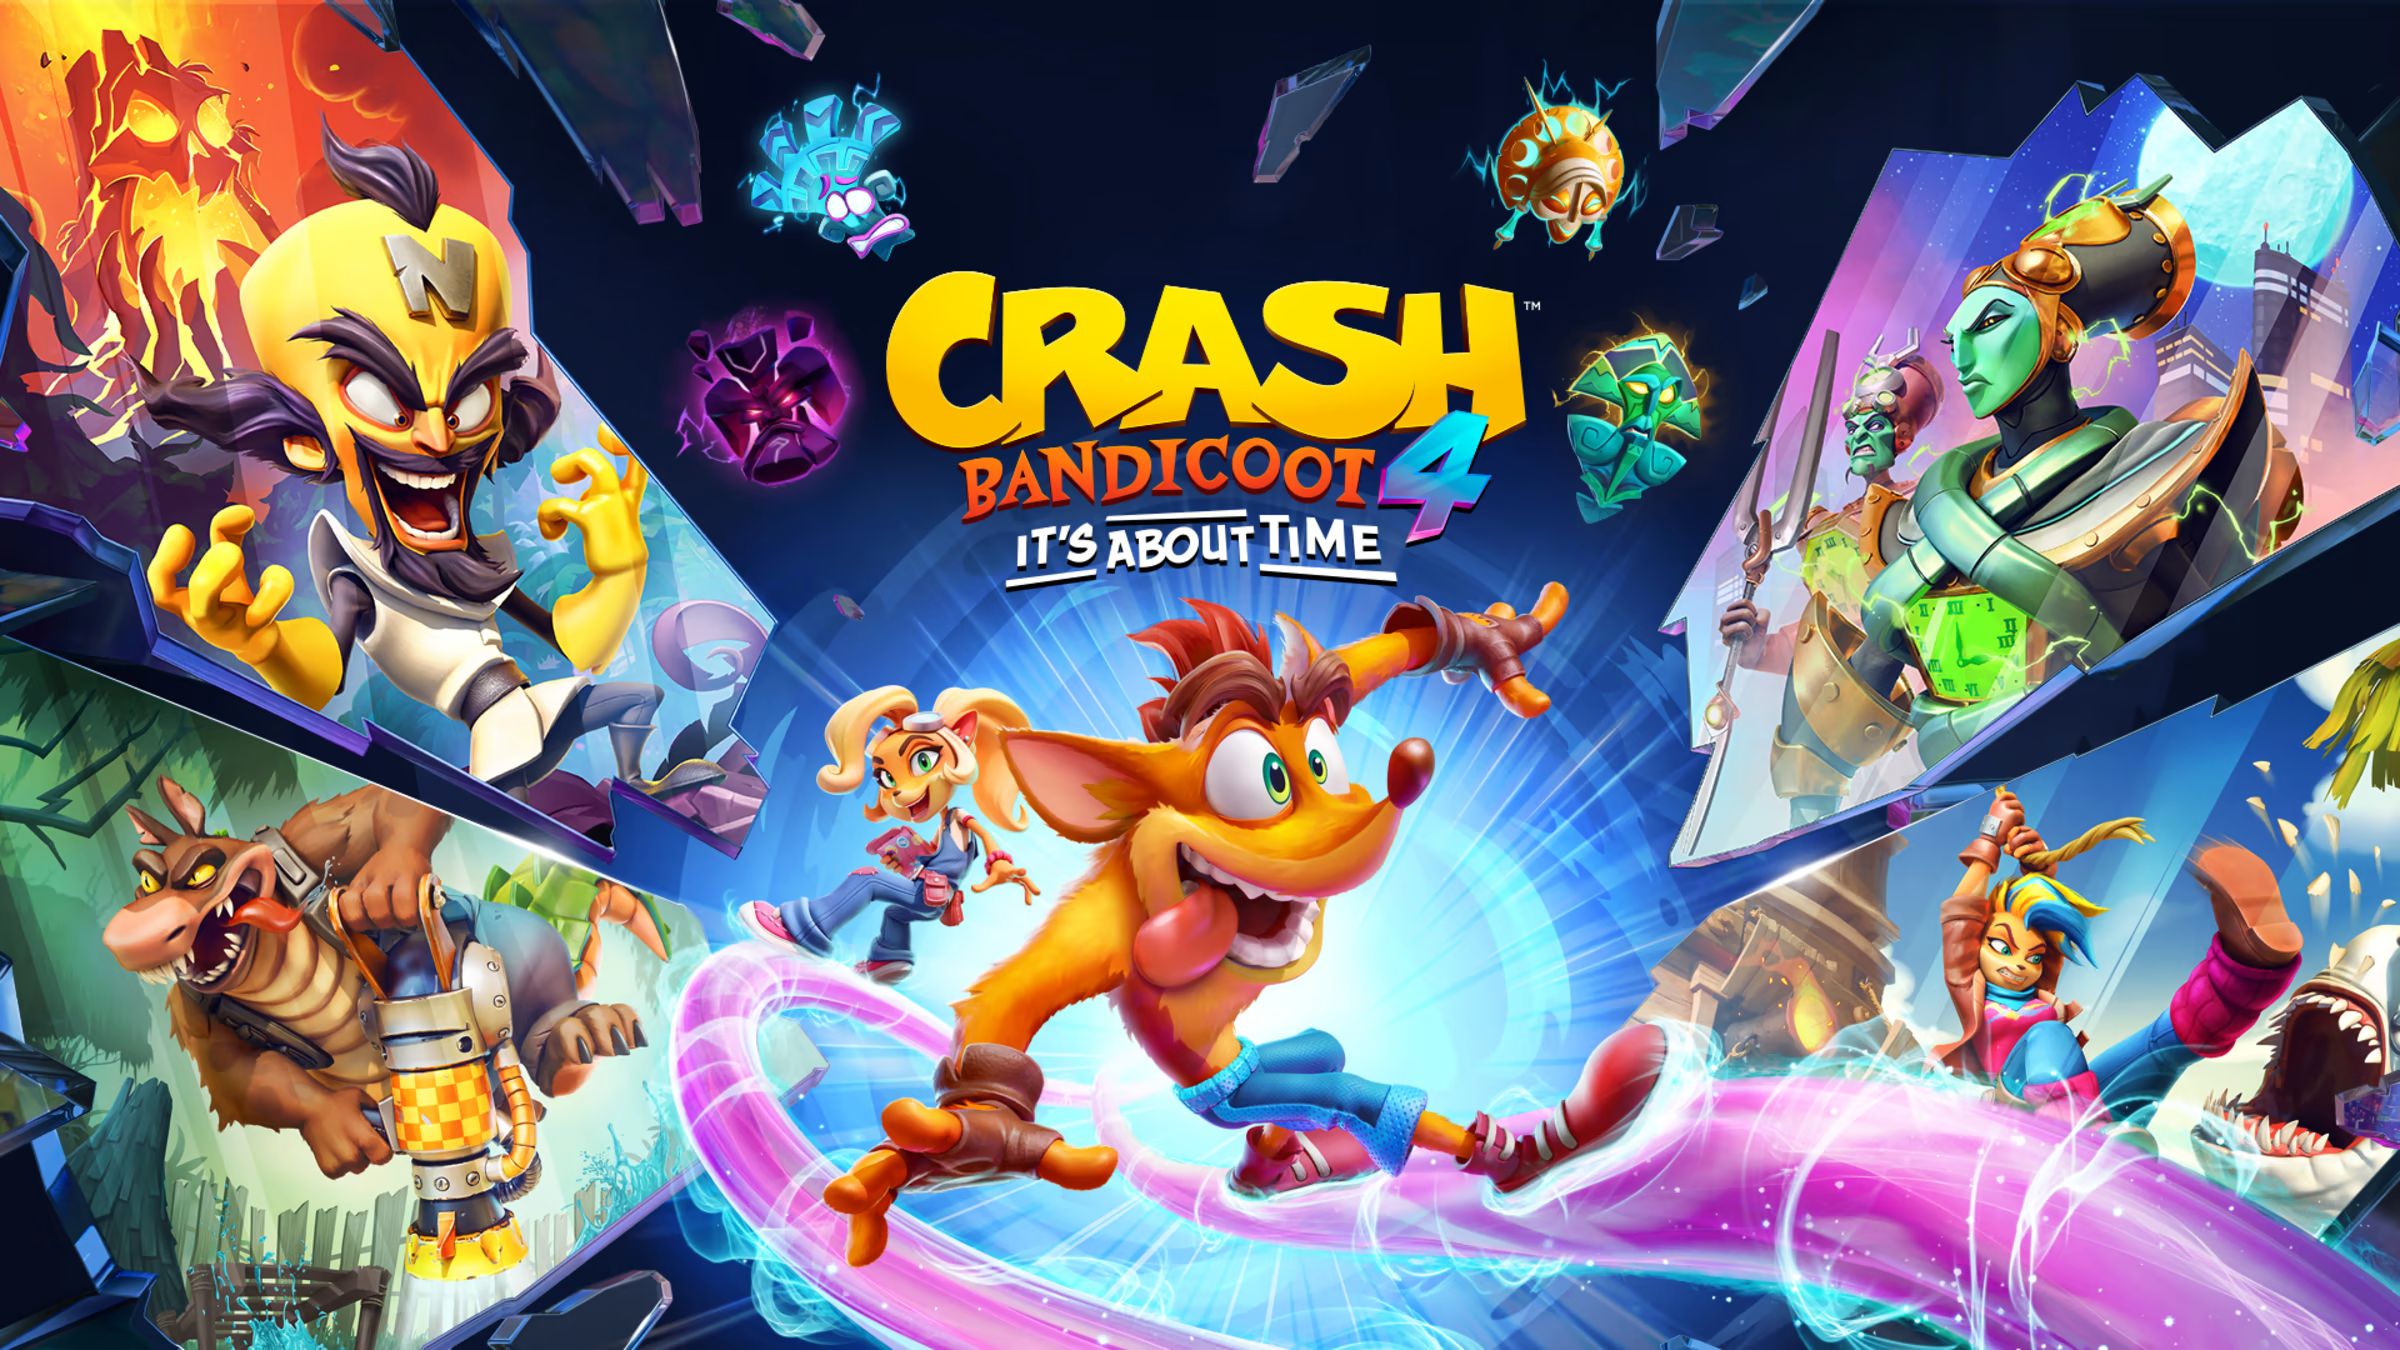 Crash Bandicoot 4 Its About Time uno de los mejores juegos de Toys for Bob